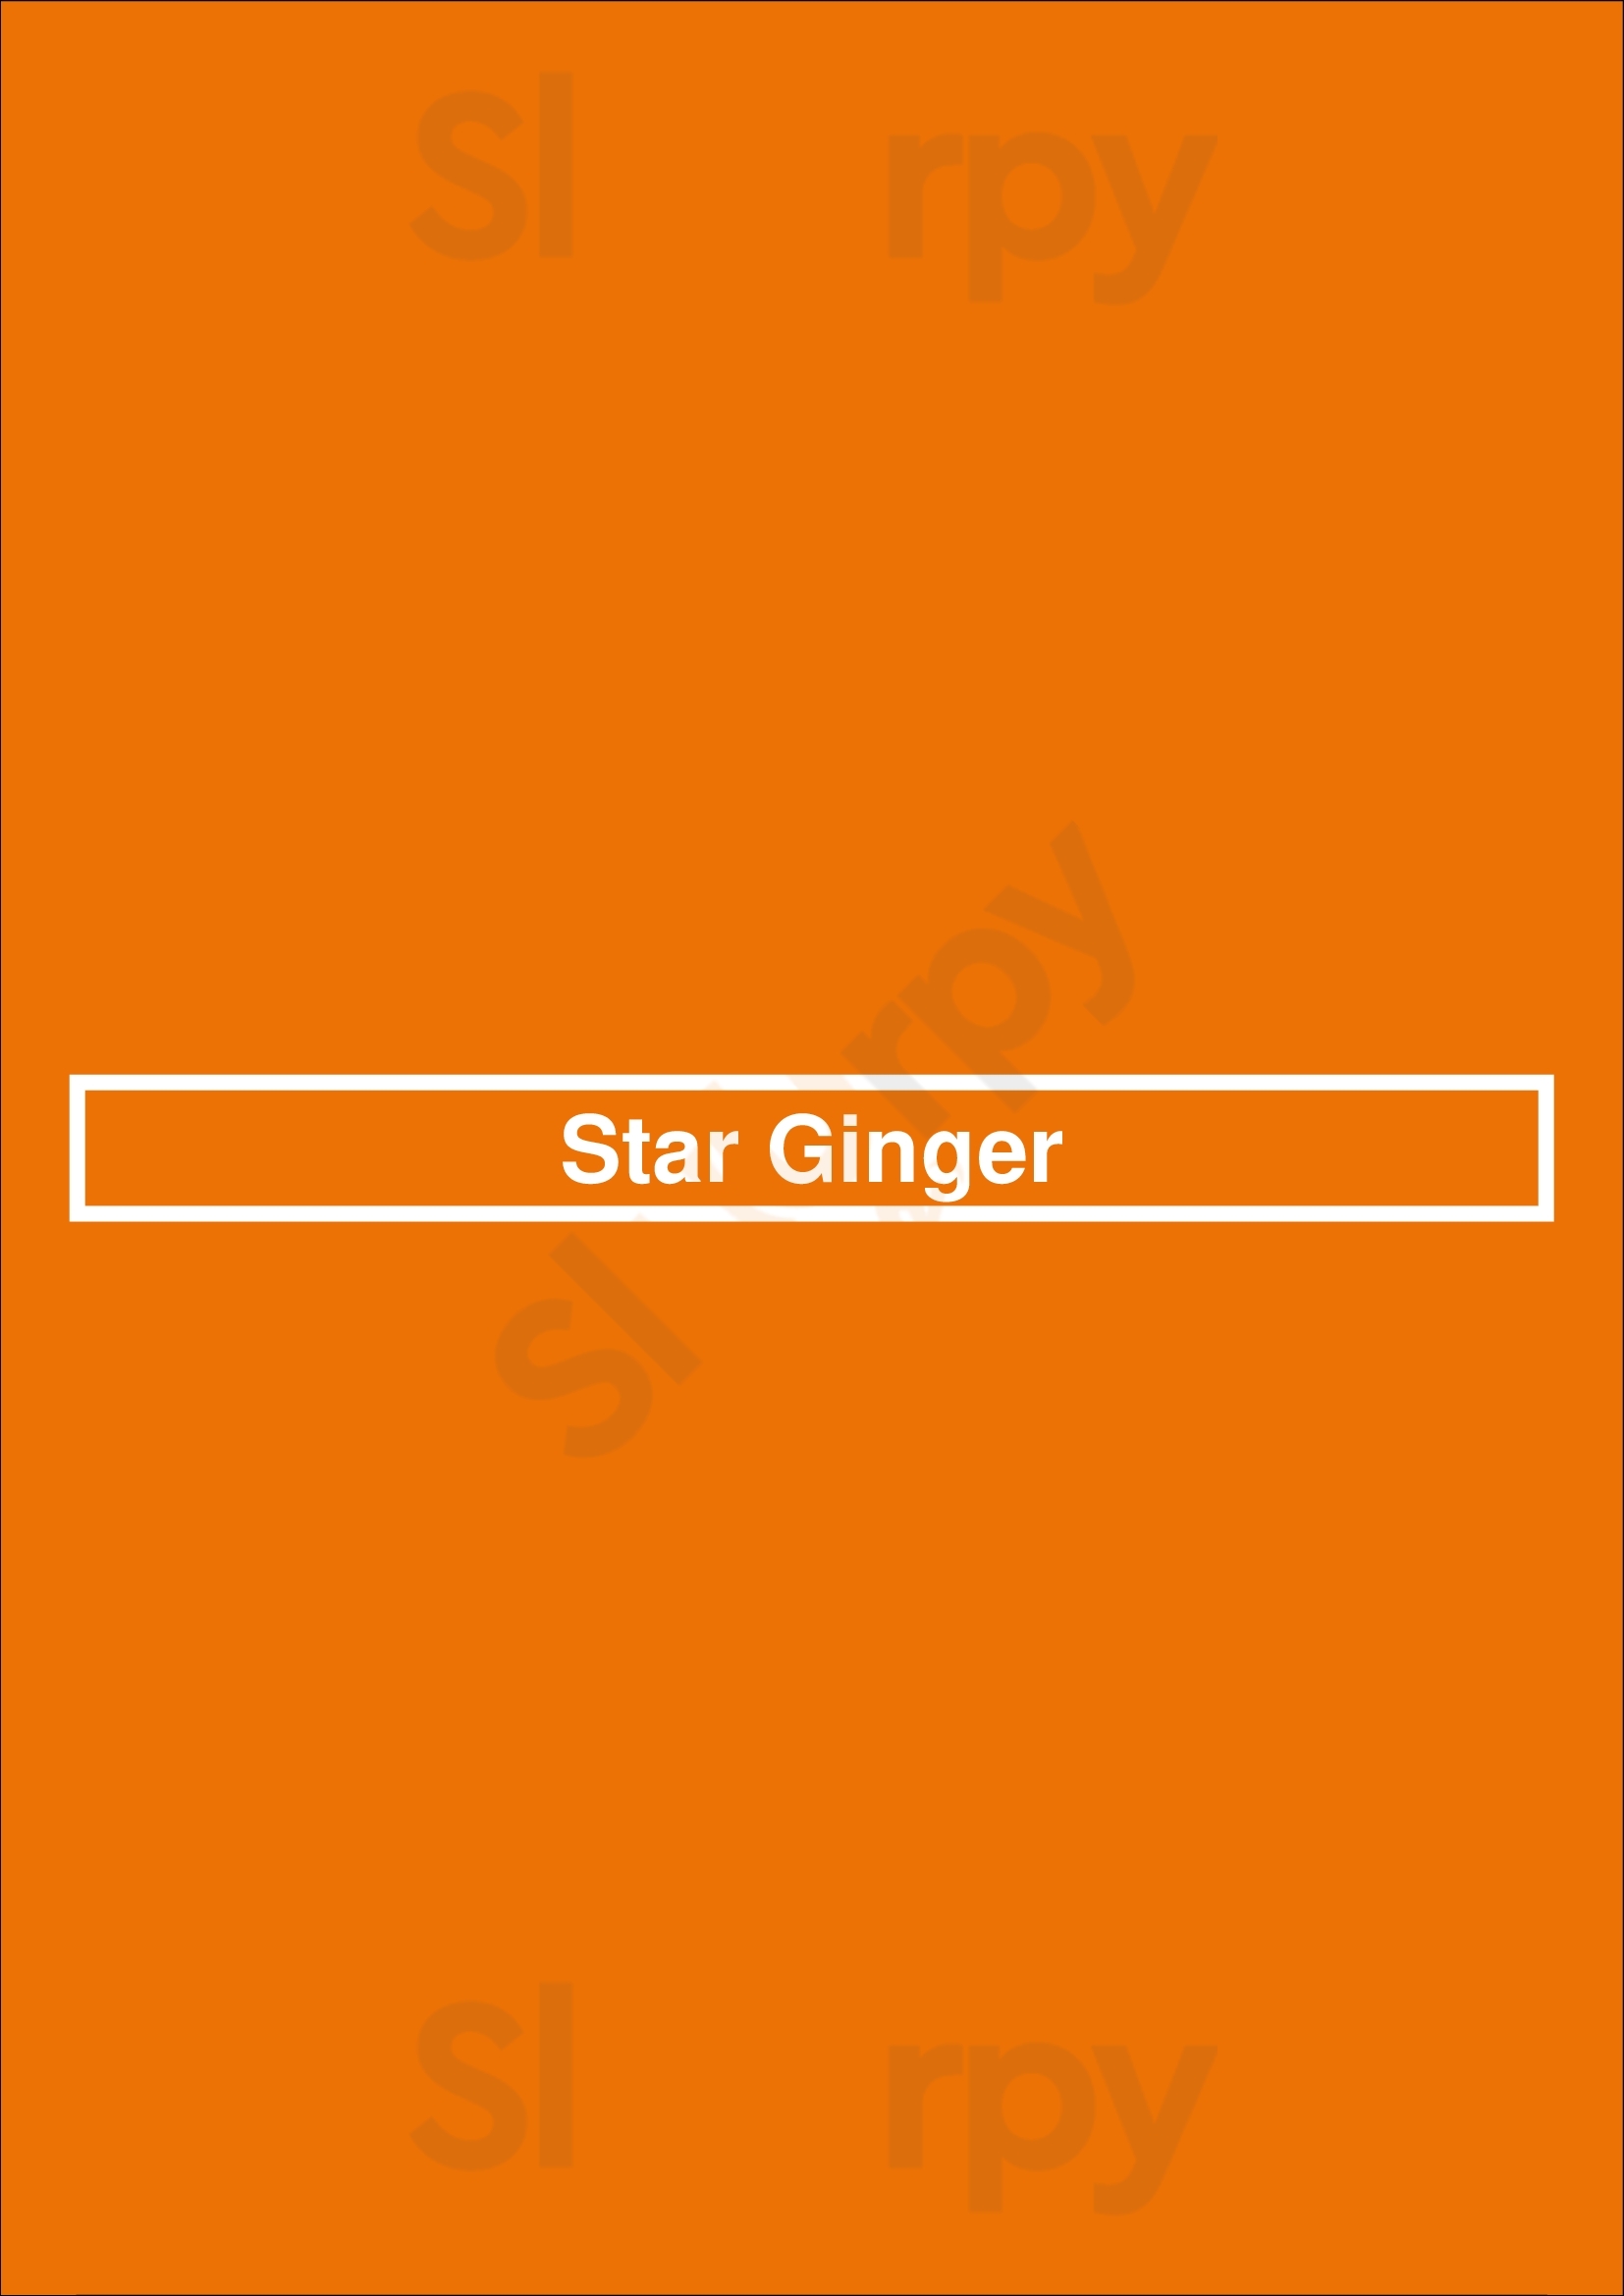 Star Ginger Sacramento Menu - 1